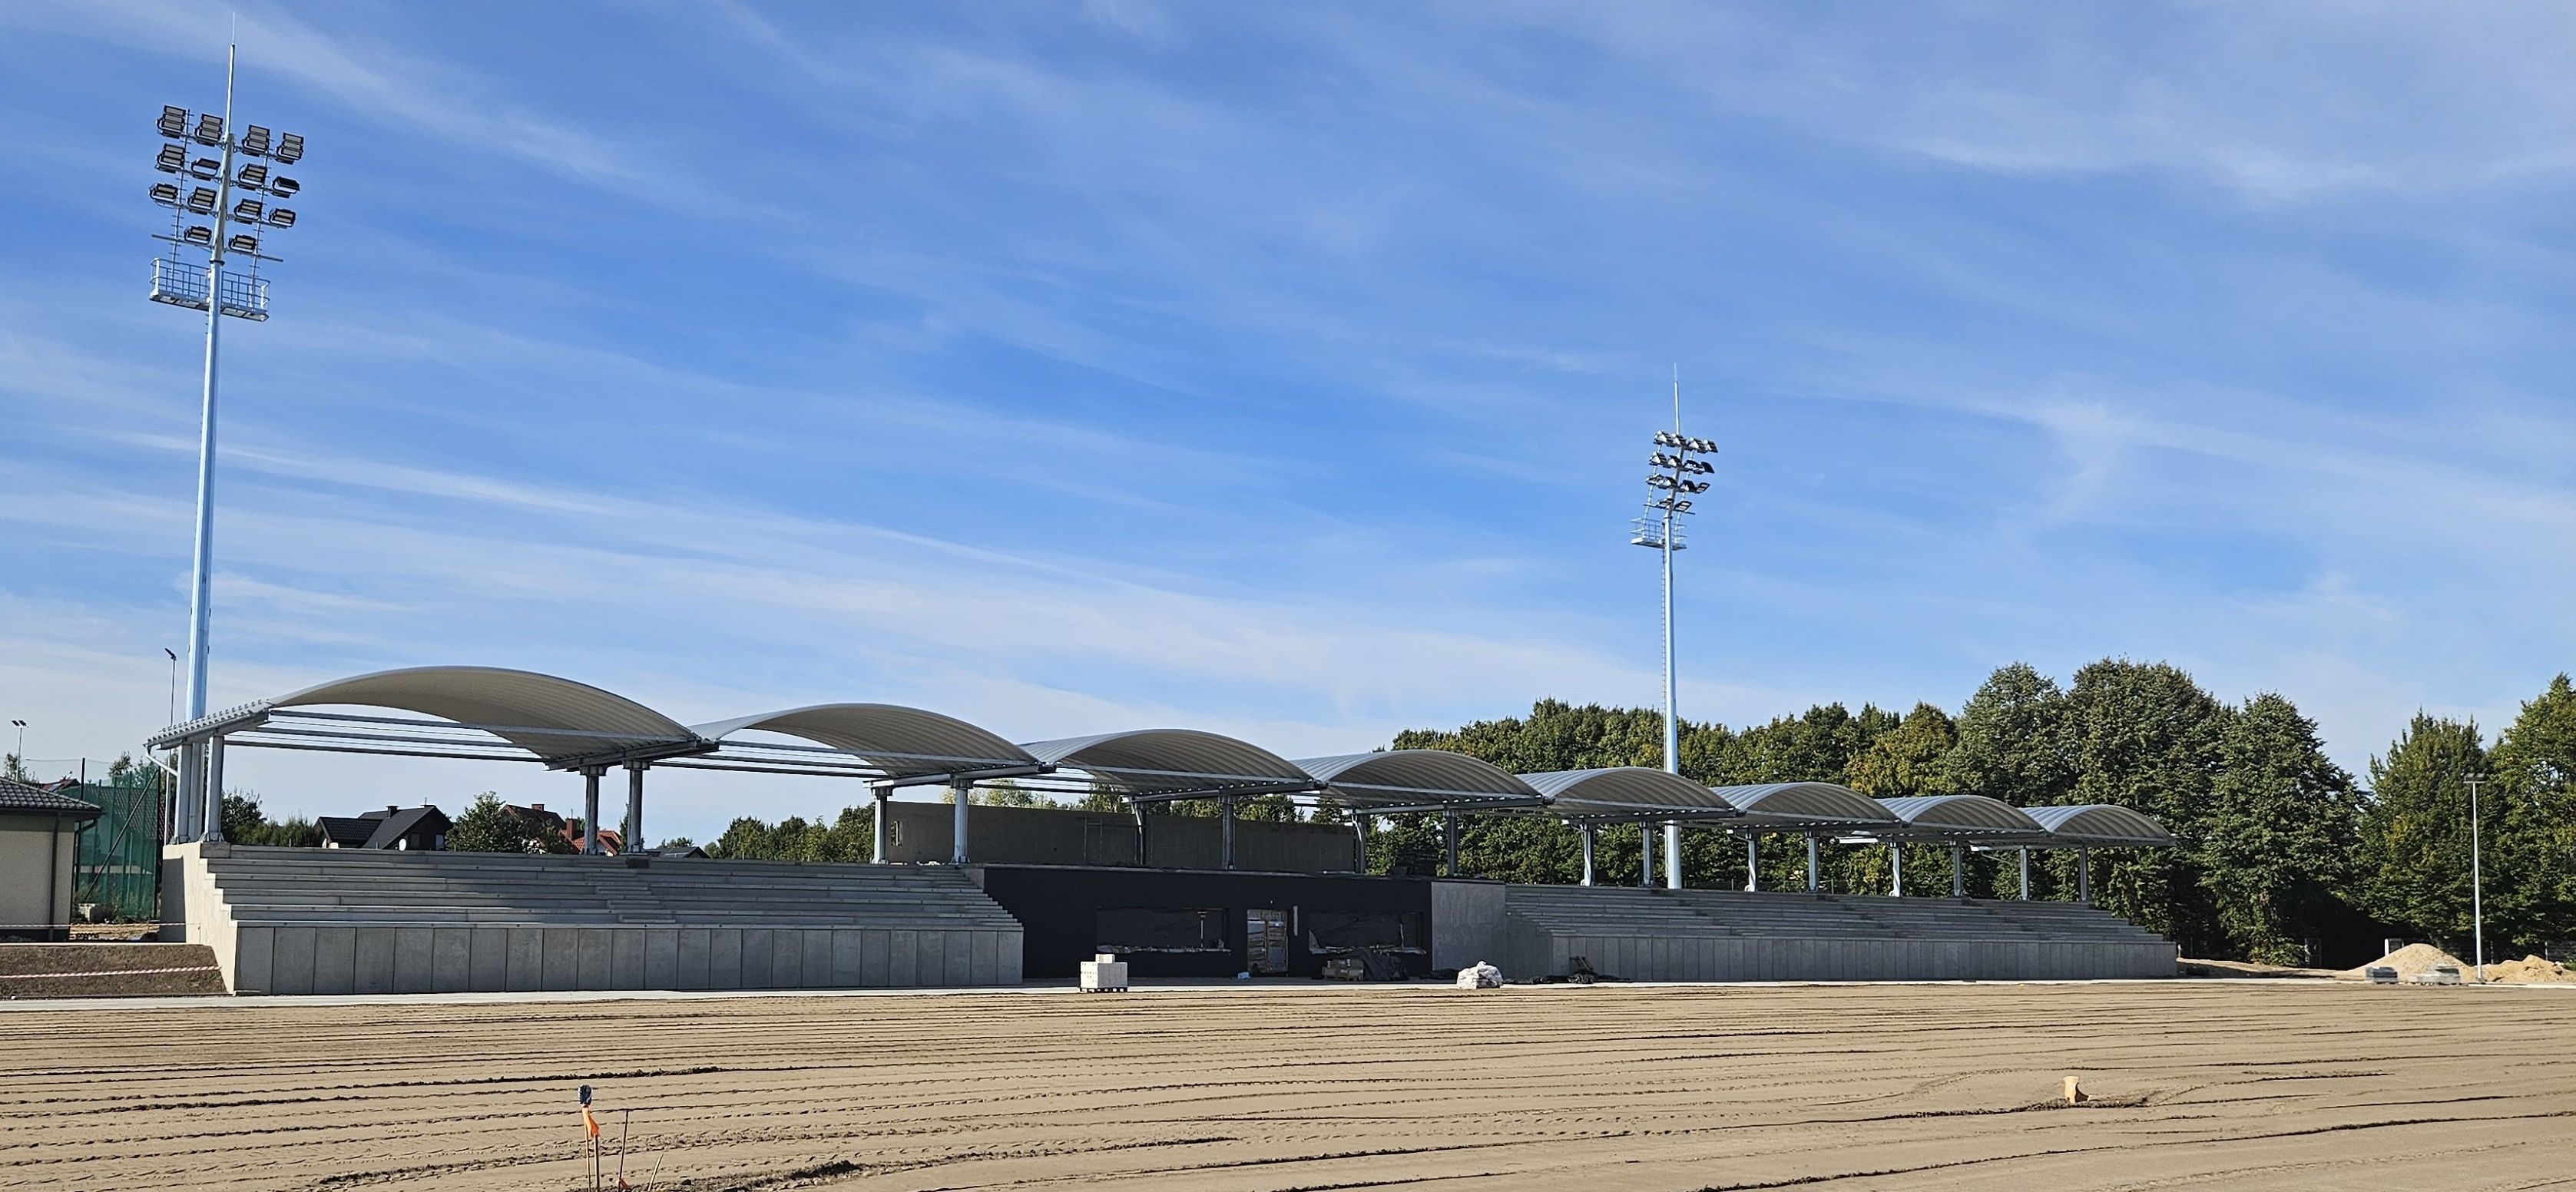 Przebudowa stadionu miejskiego w Przysusze